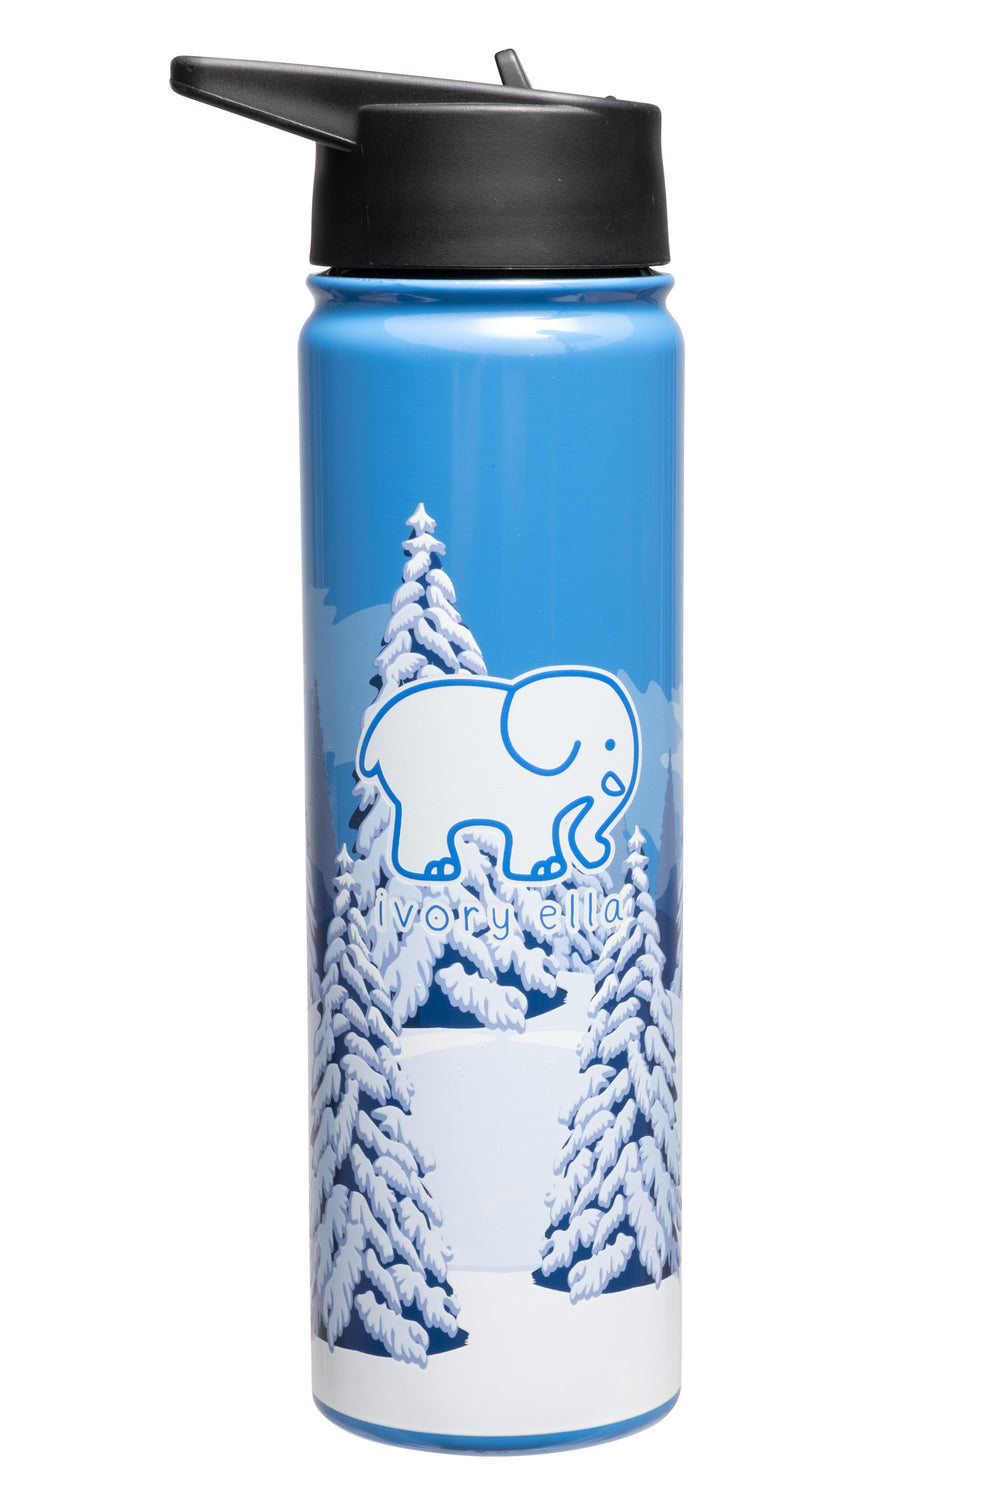 Ski Slopes 22 oz Insulated Water Bottle – Ivory Ella